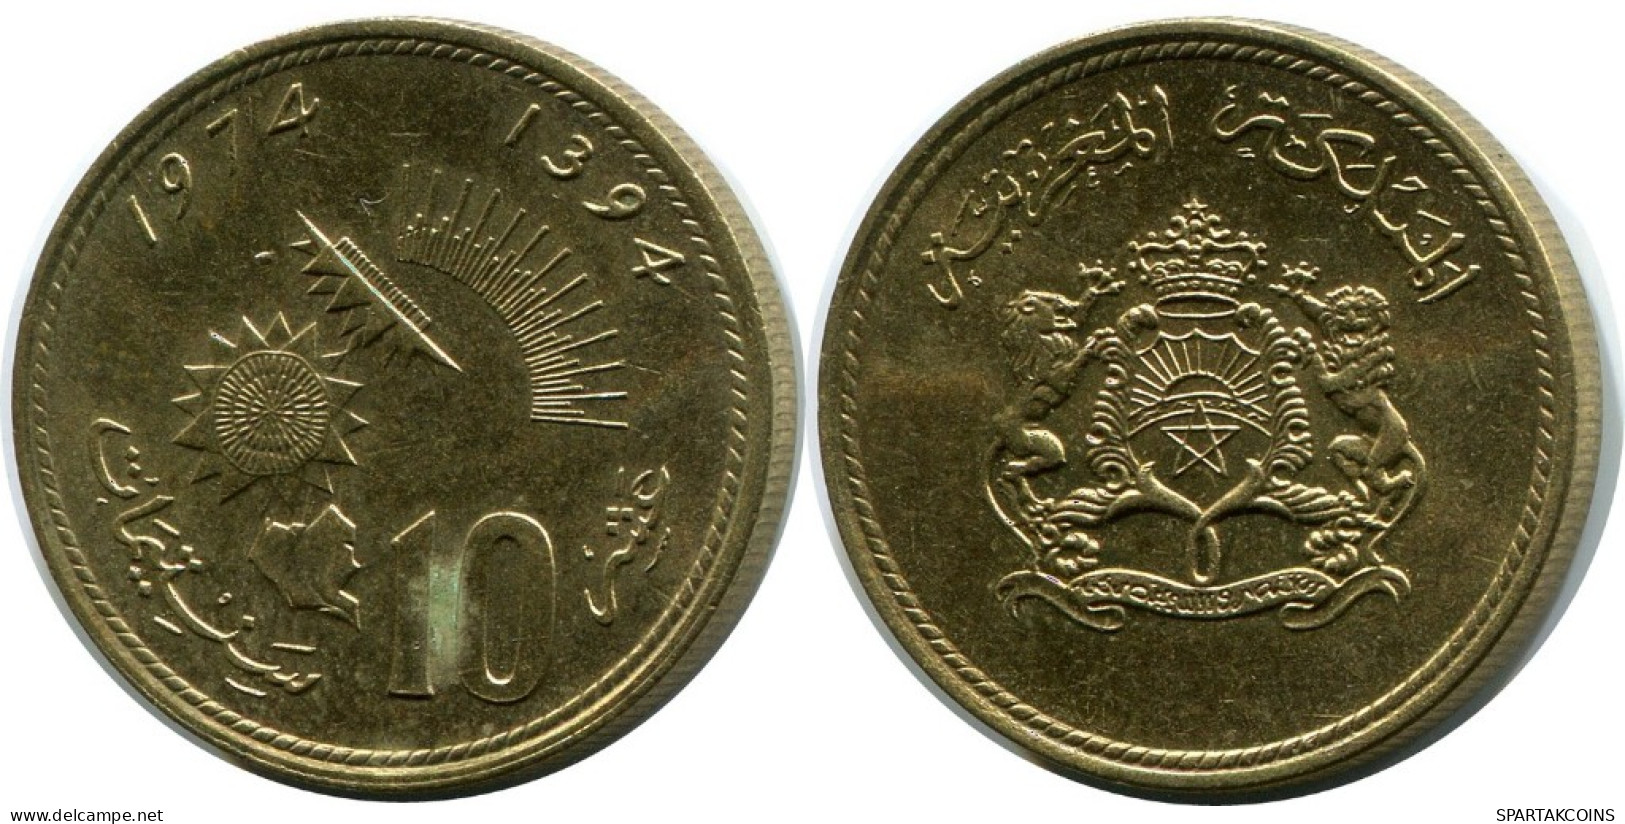 10 CENTIMES 1974 MARRUECOS MOROCCO Hassan II Moneda #AH842.E.A - Maroc